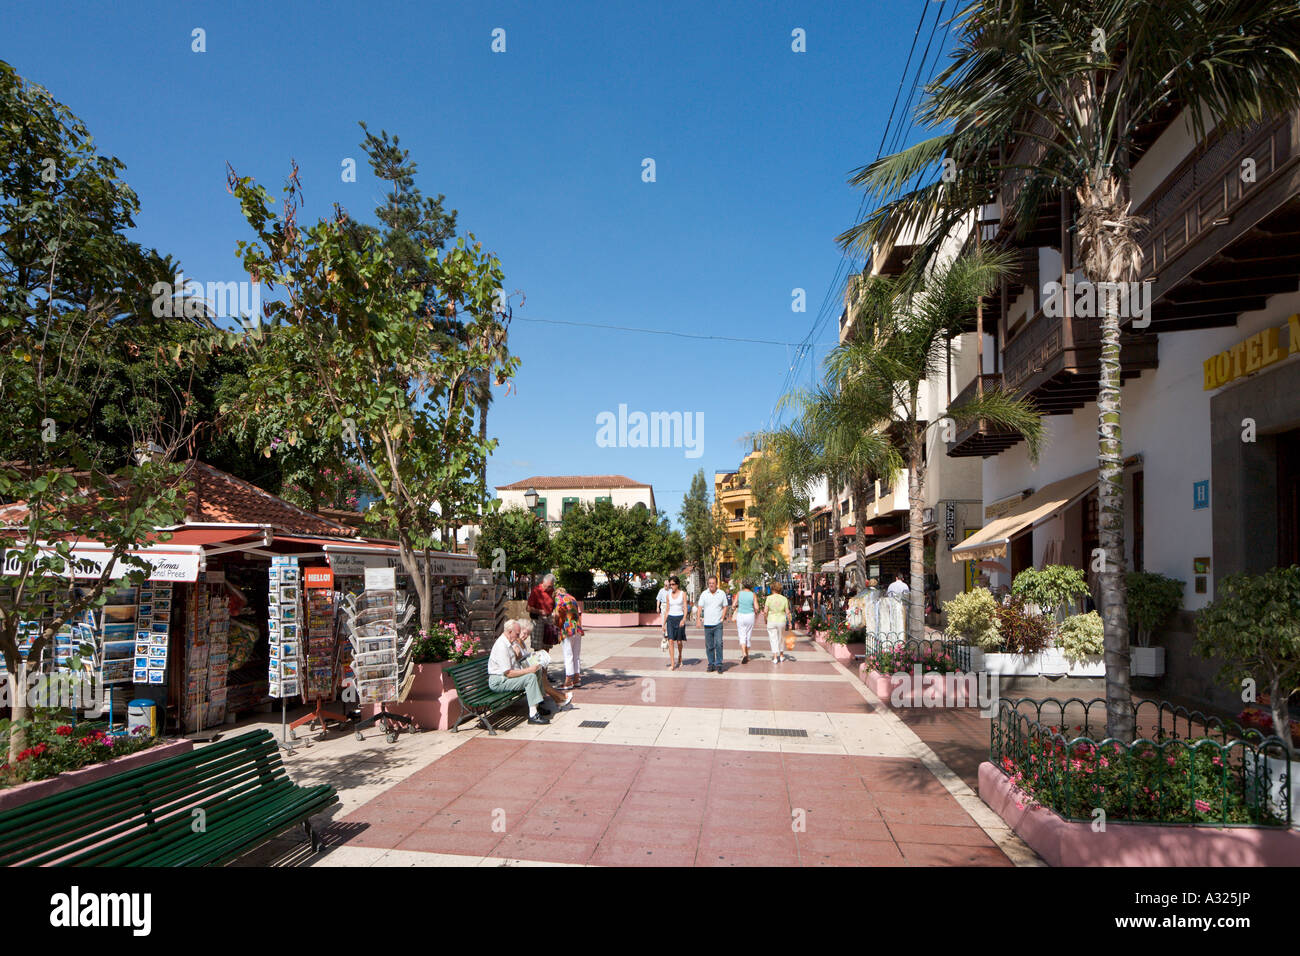 Geschäfte und Fußgängerzone in der Stadt-Zentrum, Puerto De La Cruz,  Teneriffa, Kanarische Inseln, Spanien Stockfotografie - Alamy